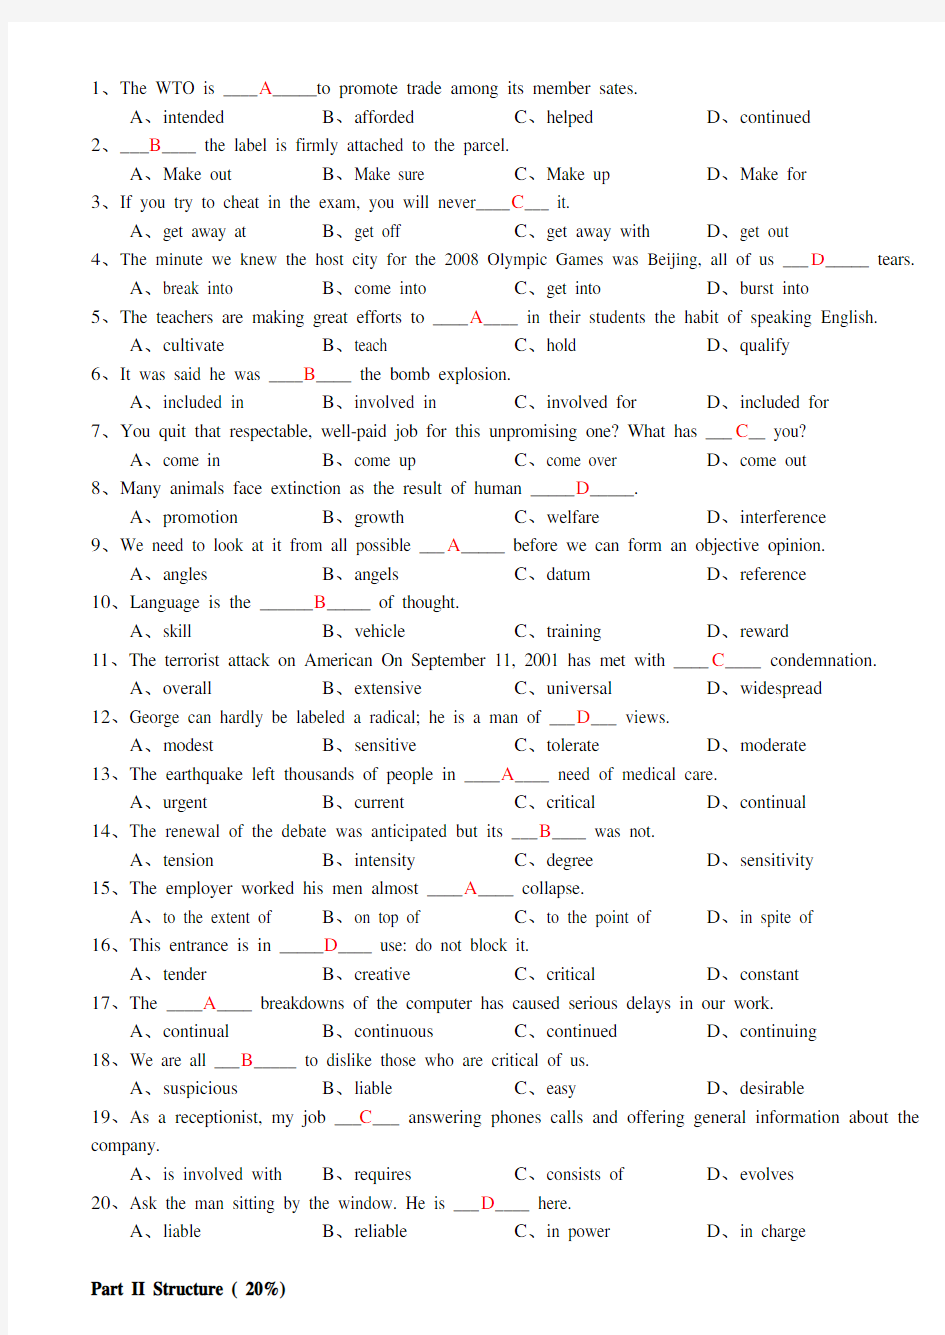 英语考试题目及答案